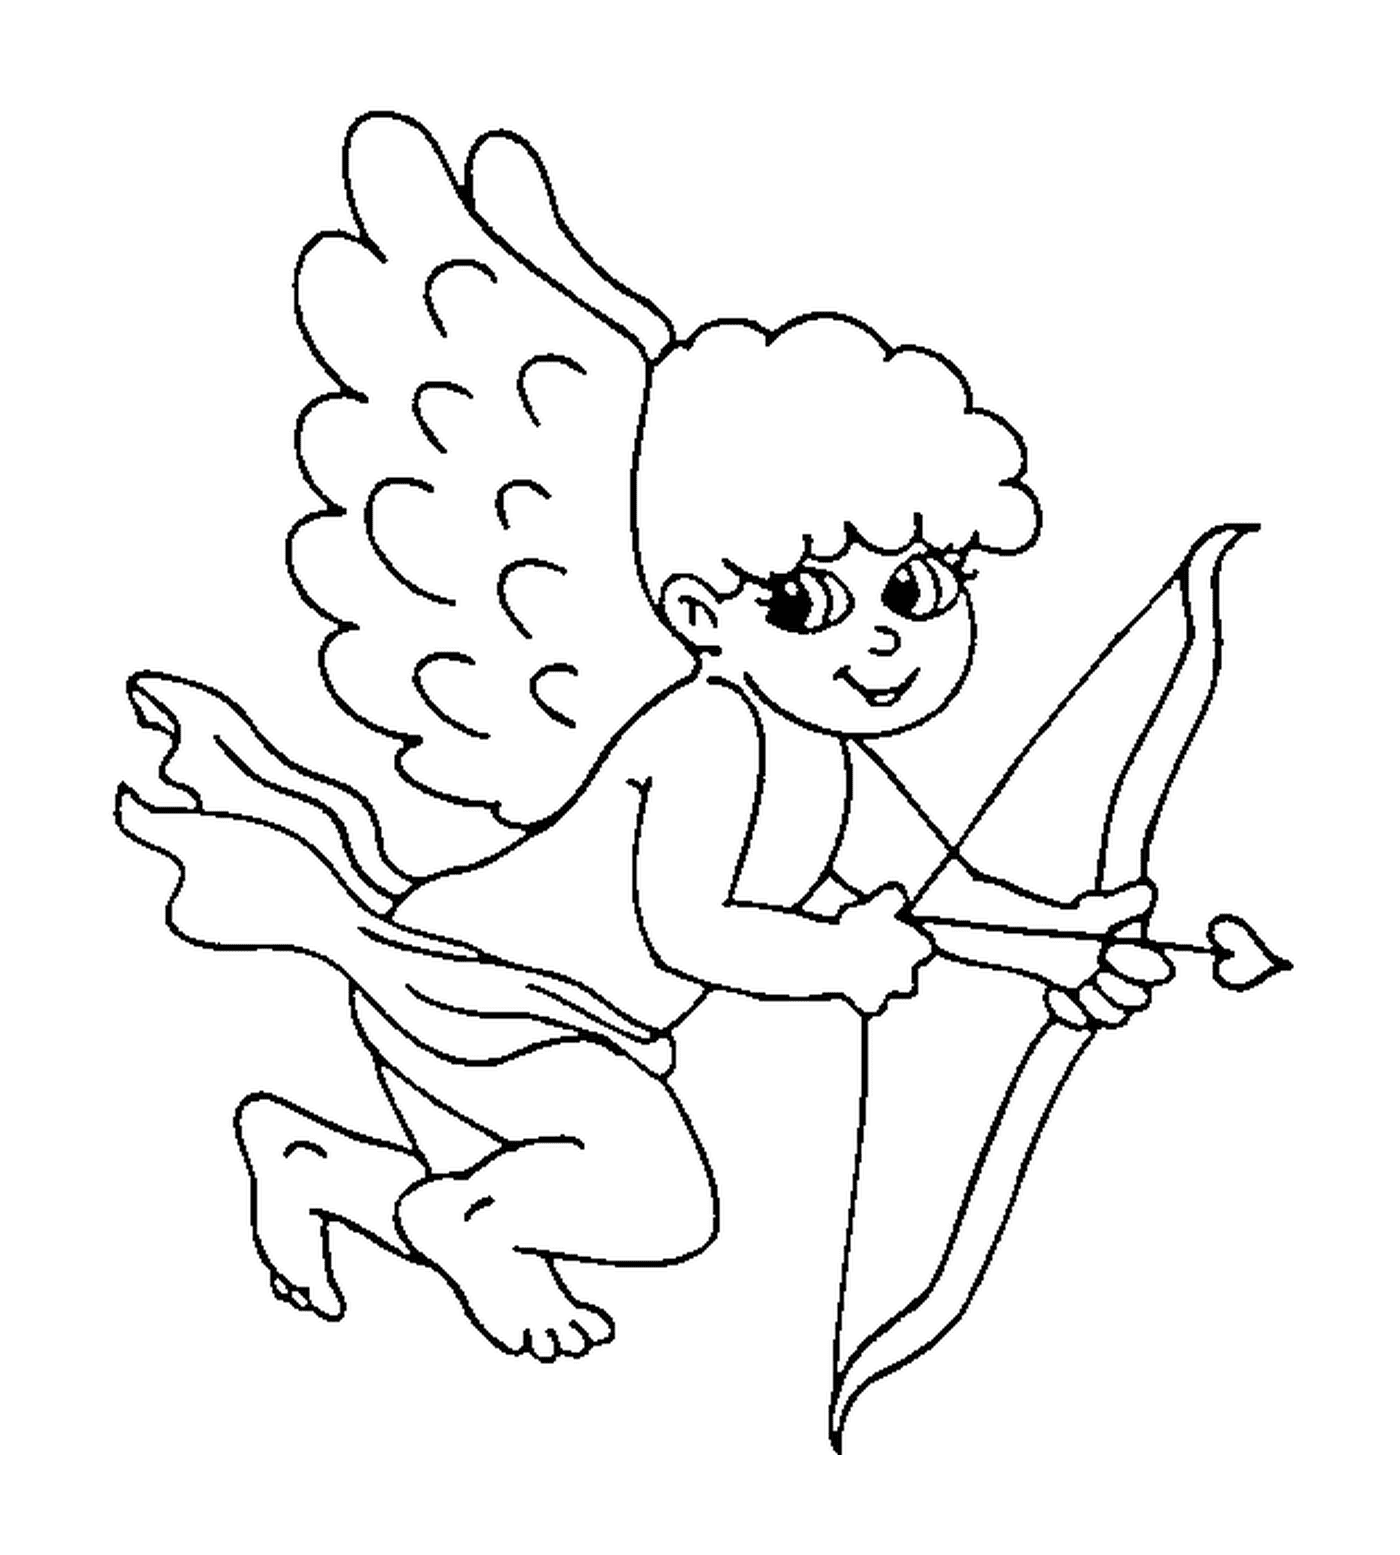  Um anjo segurando um arco e uma flecha 